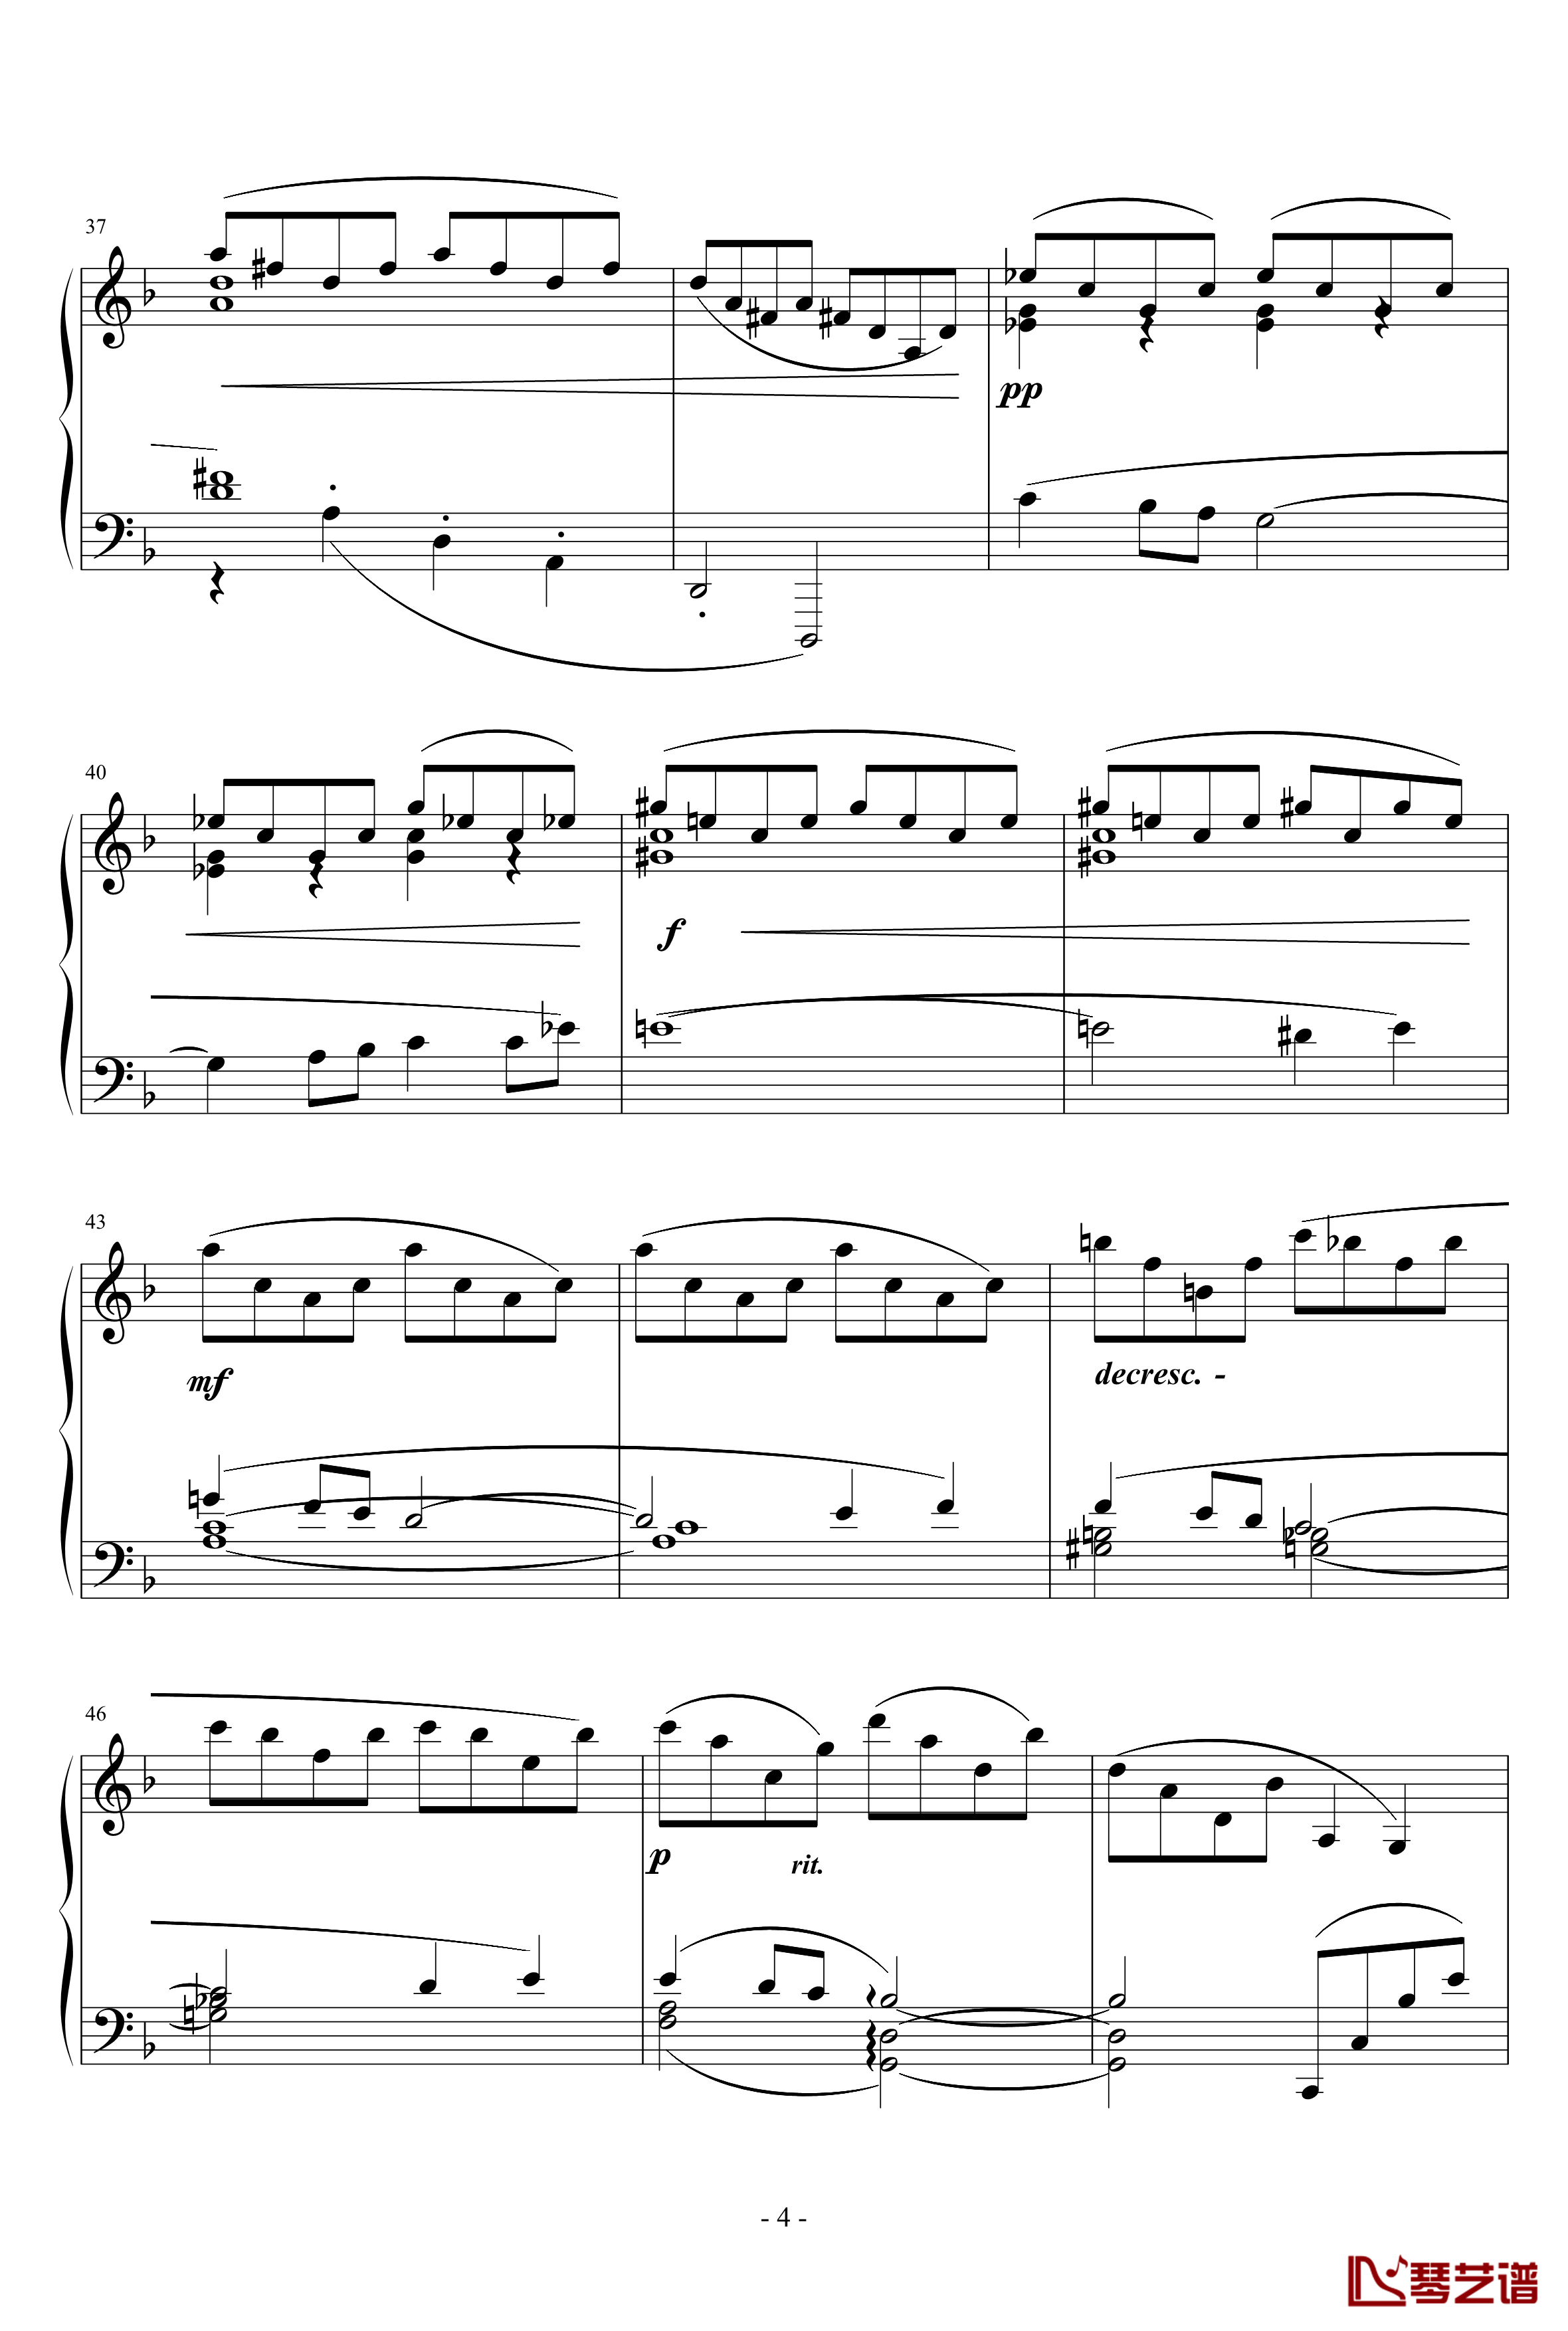 梦幻曲钢琴谱-德彪西4